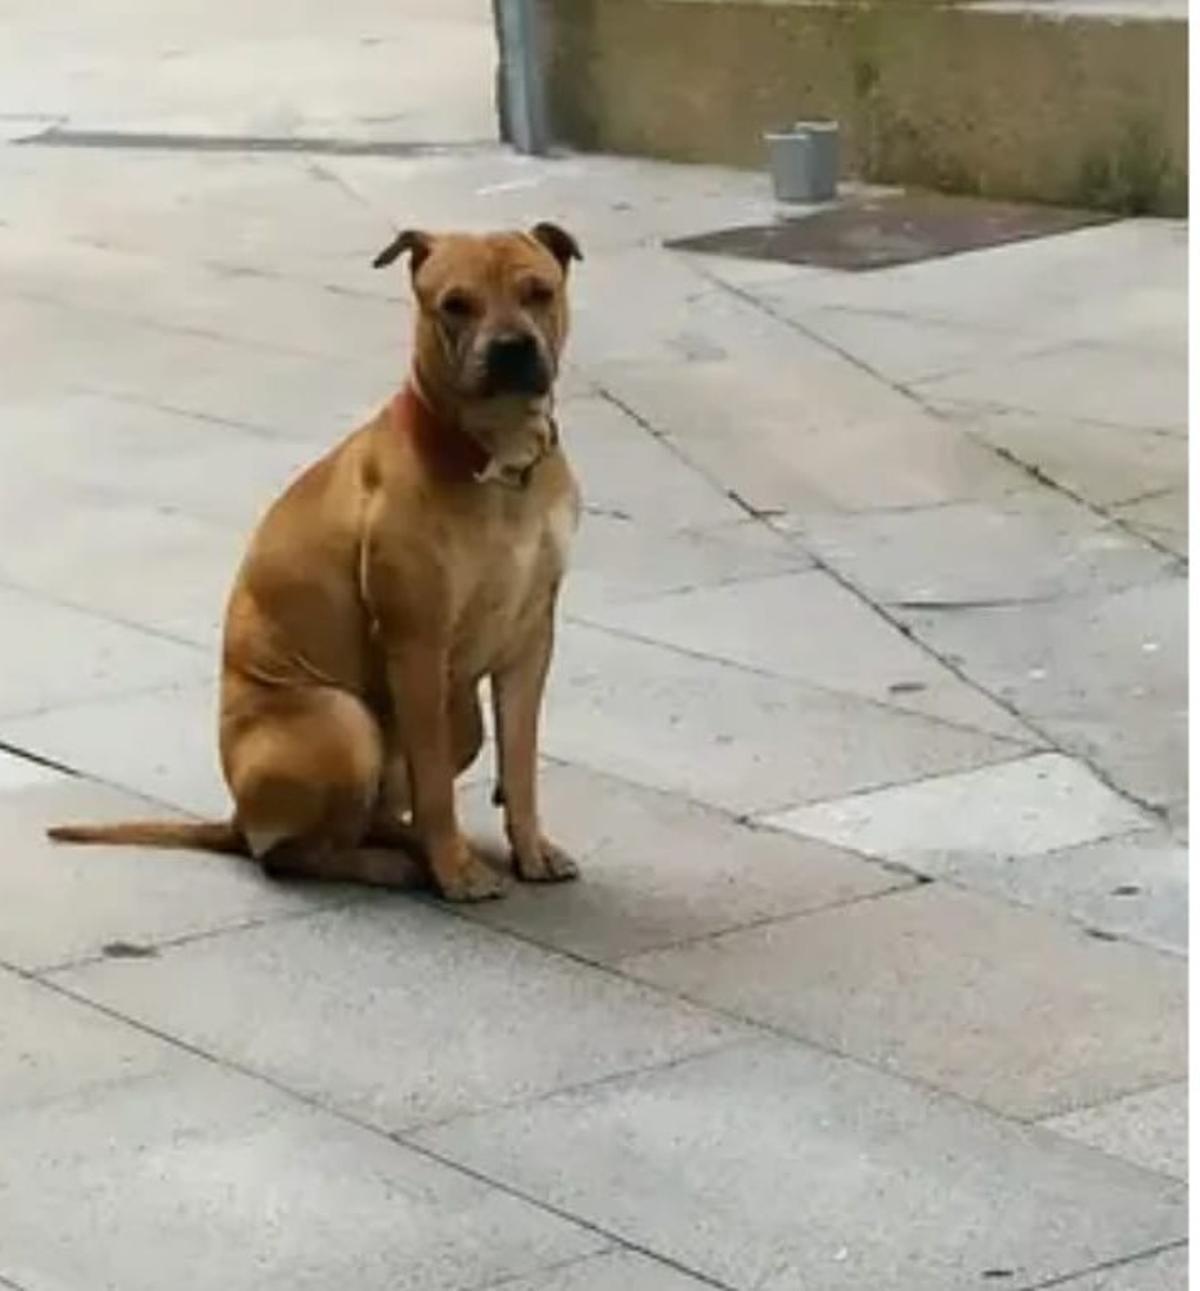 Los testigos y afectados por los ataques de ese cruce de pitbull coinciden en señalar a esta perra como Dona, la autora de las agresiones en el barrio.